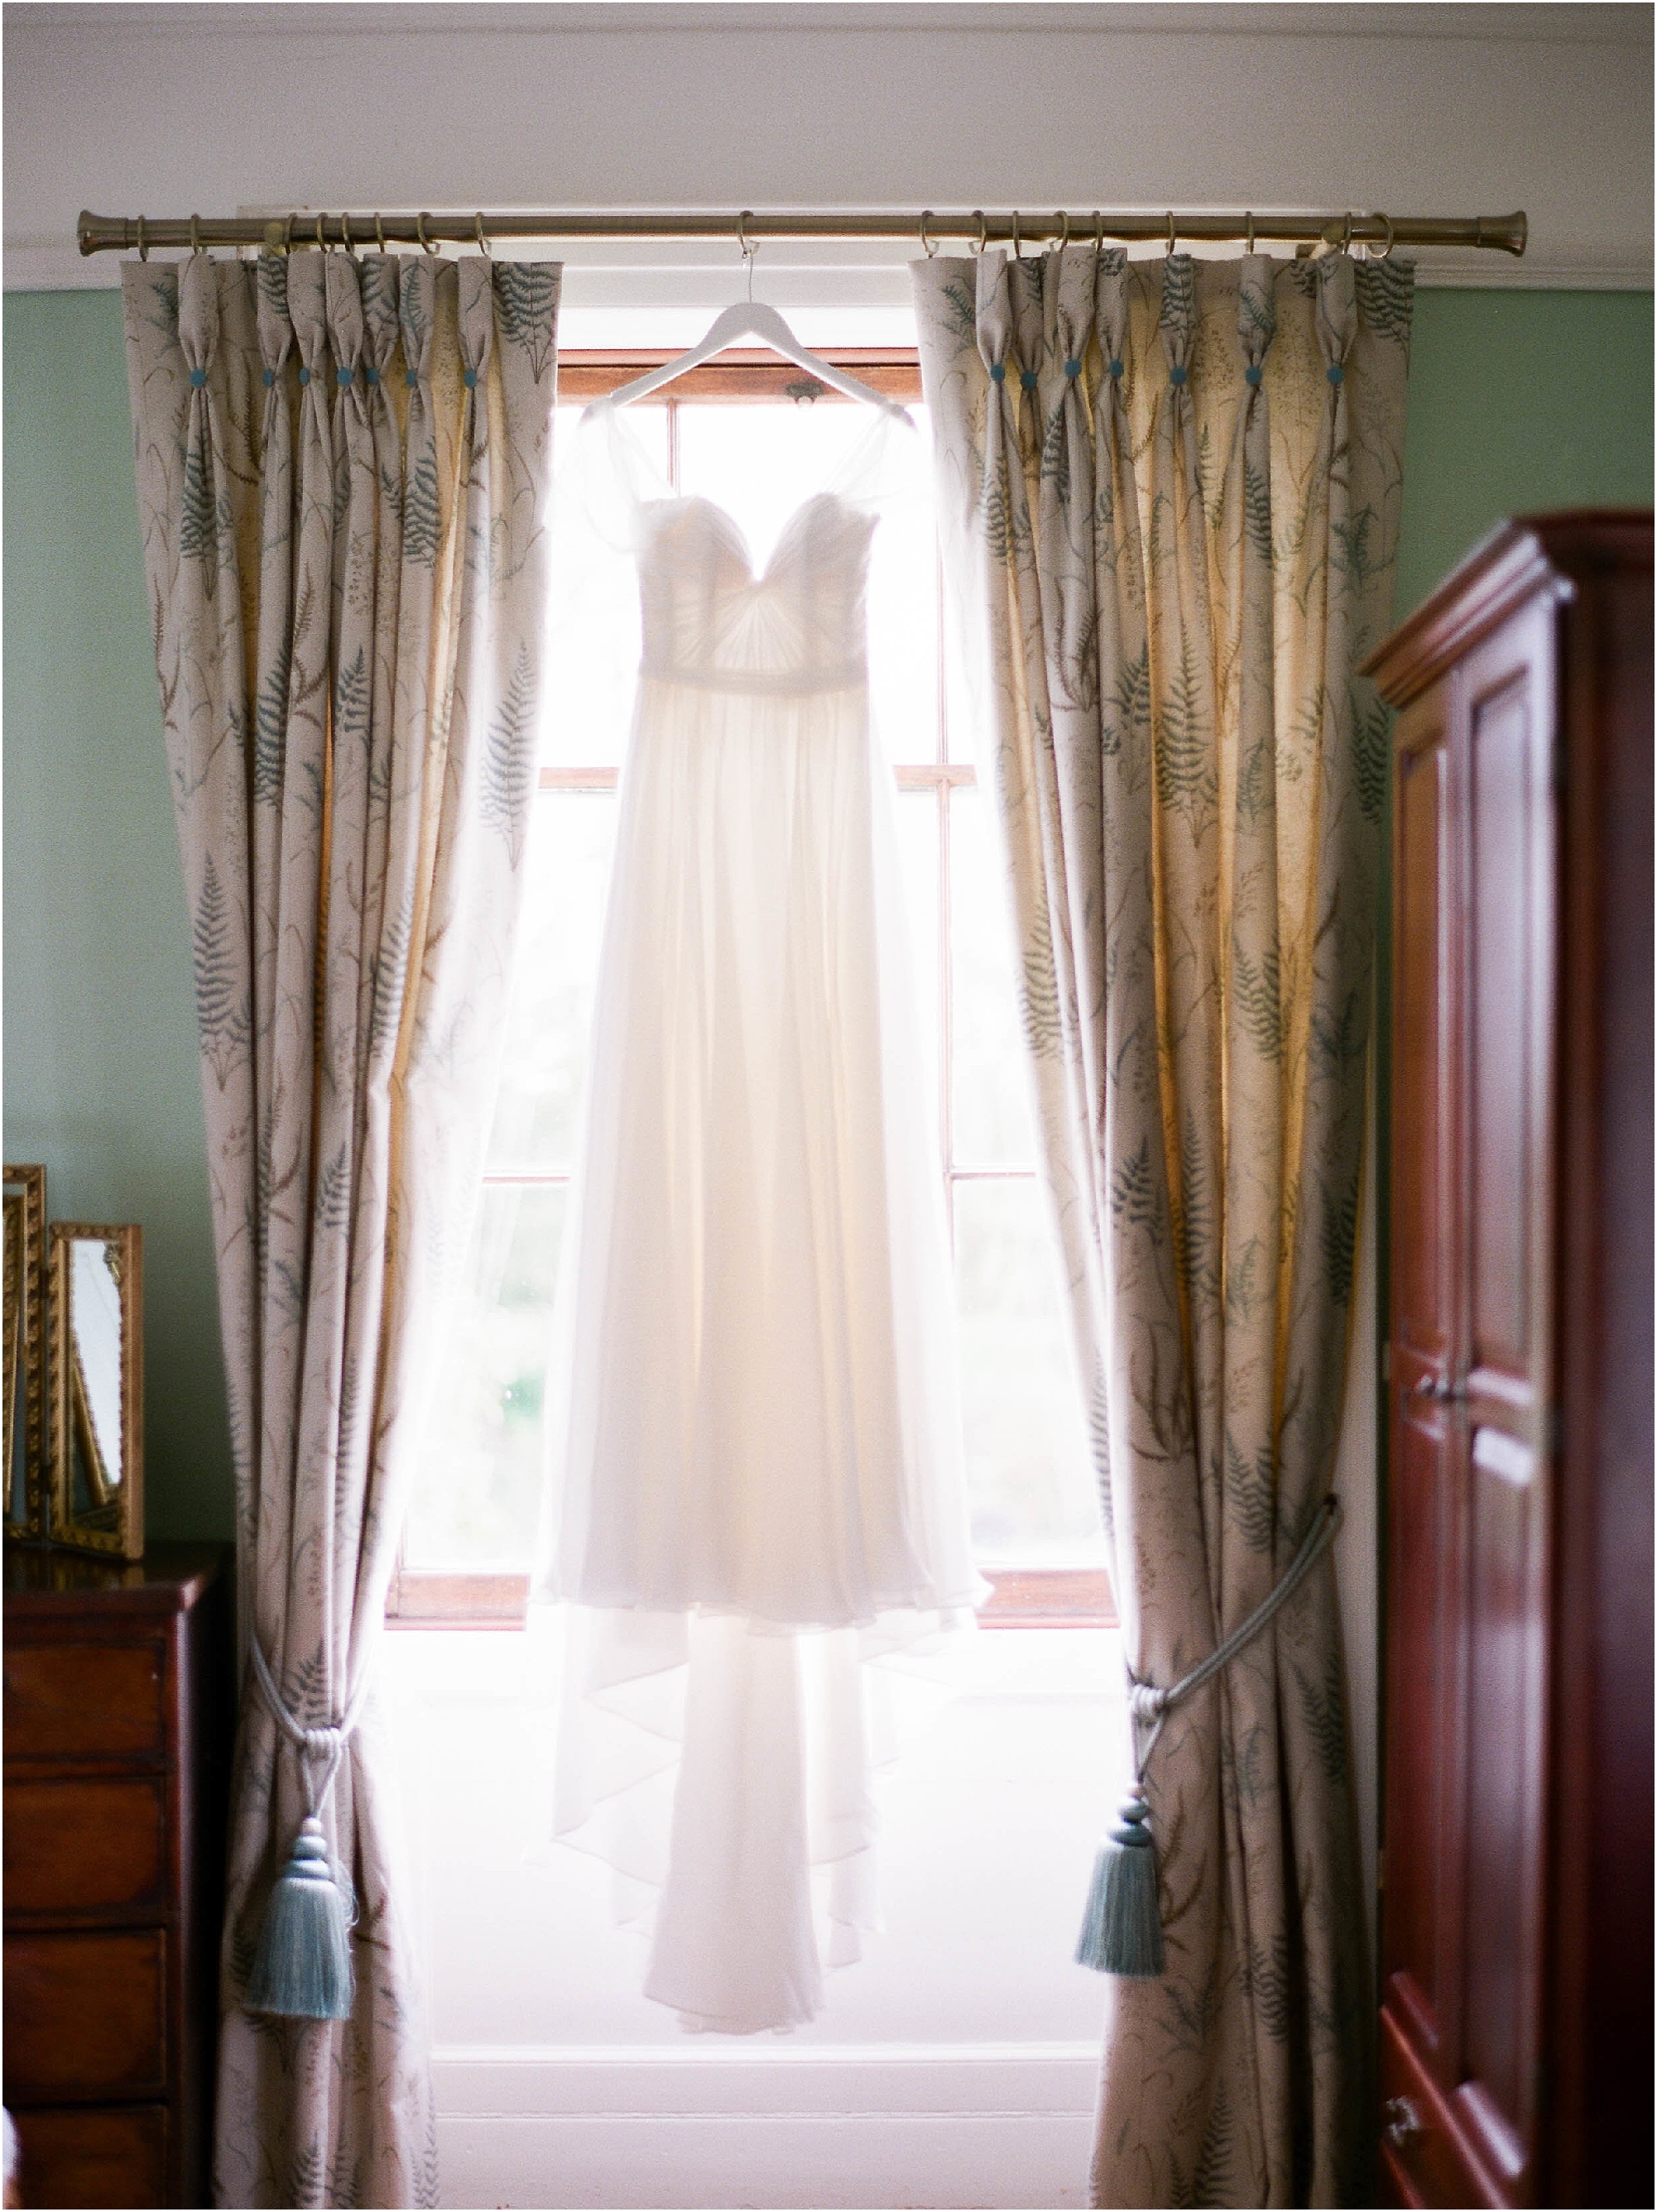 Naomi Neoh wedding dress hanging in window